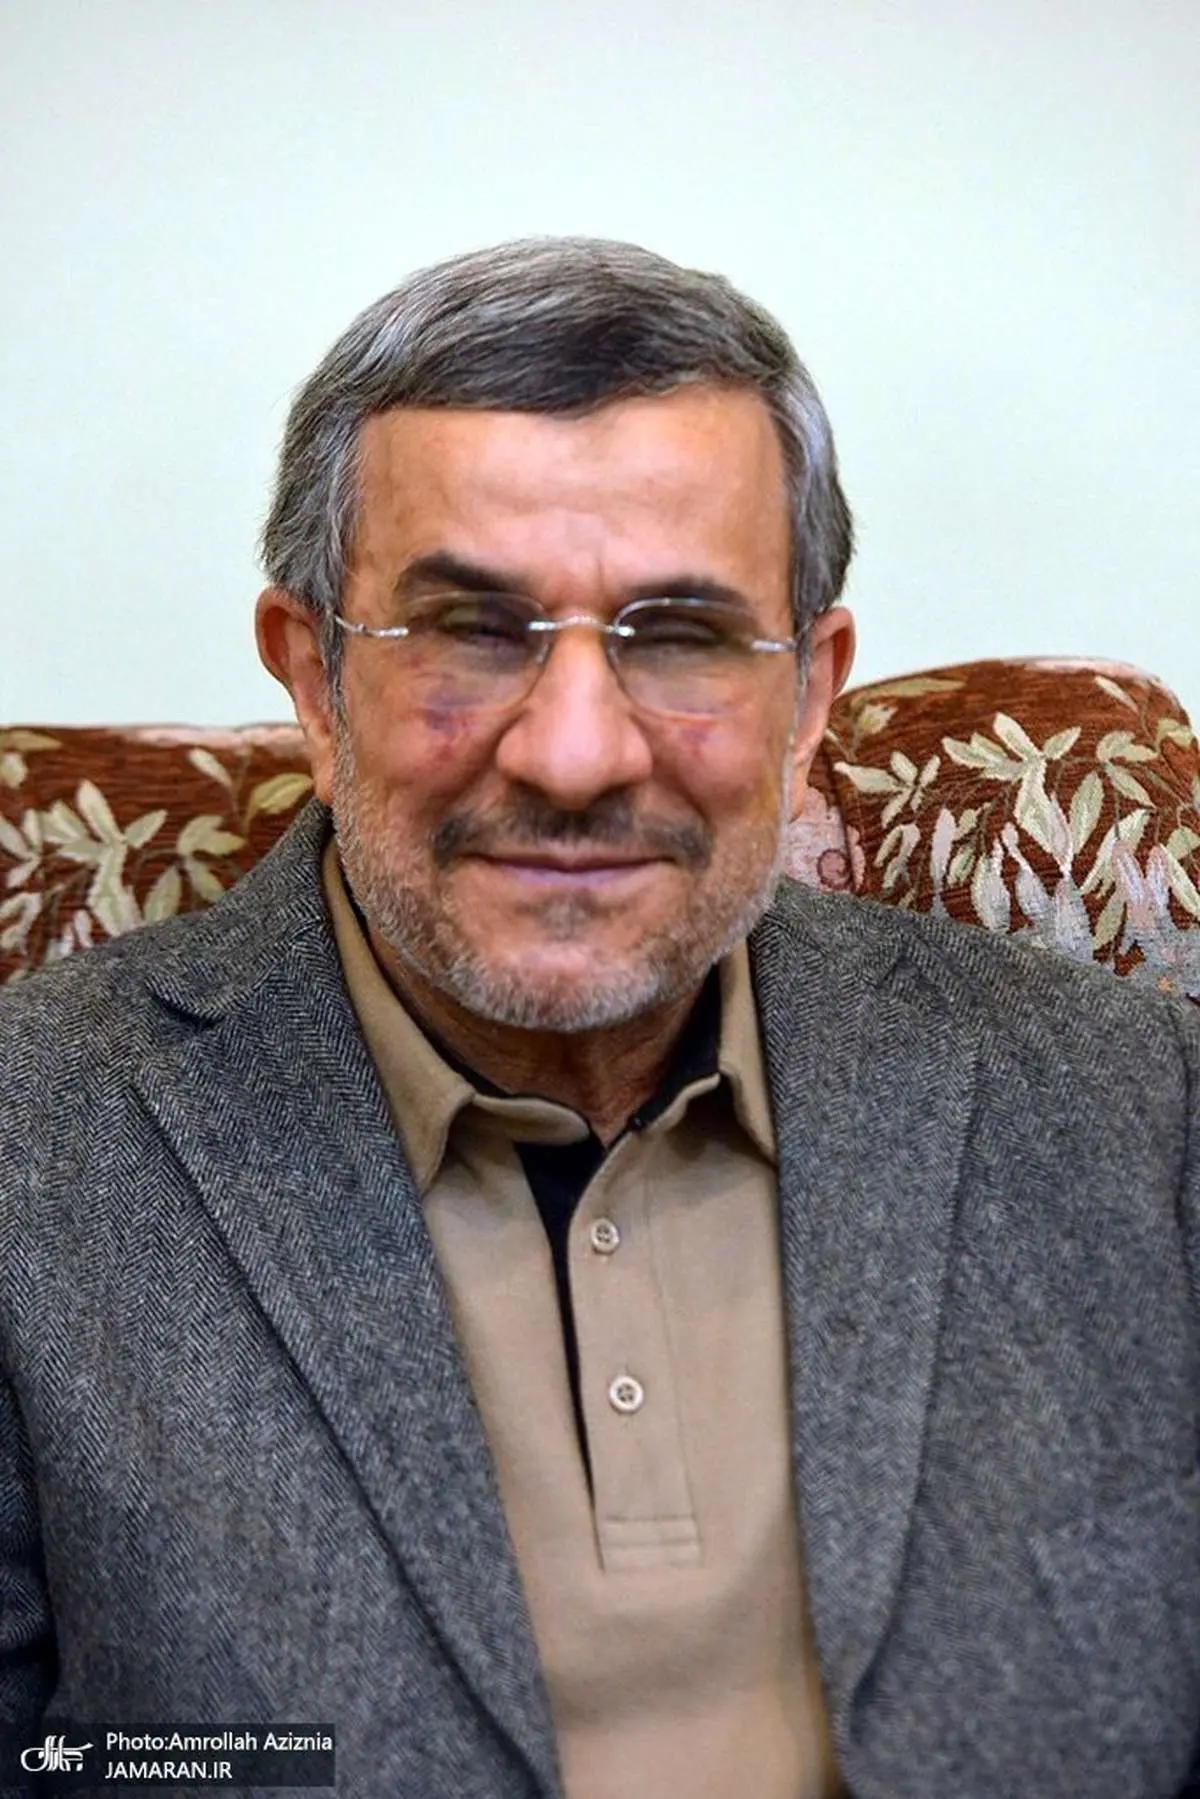 احمدی نژاد عمل زیبایی کرده یا مریض است؟/ تصاویر